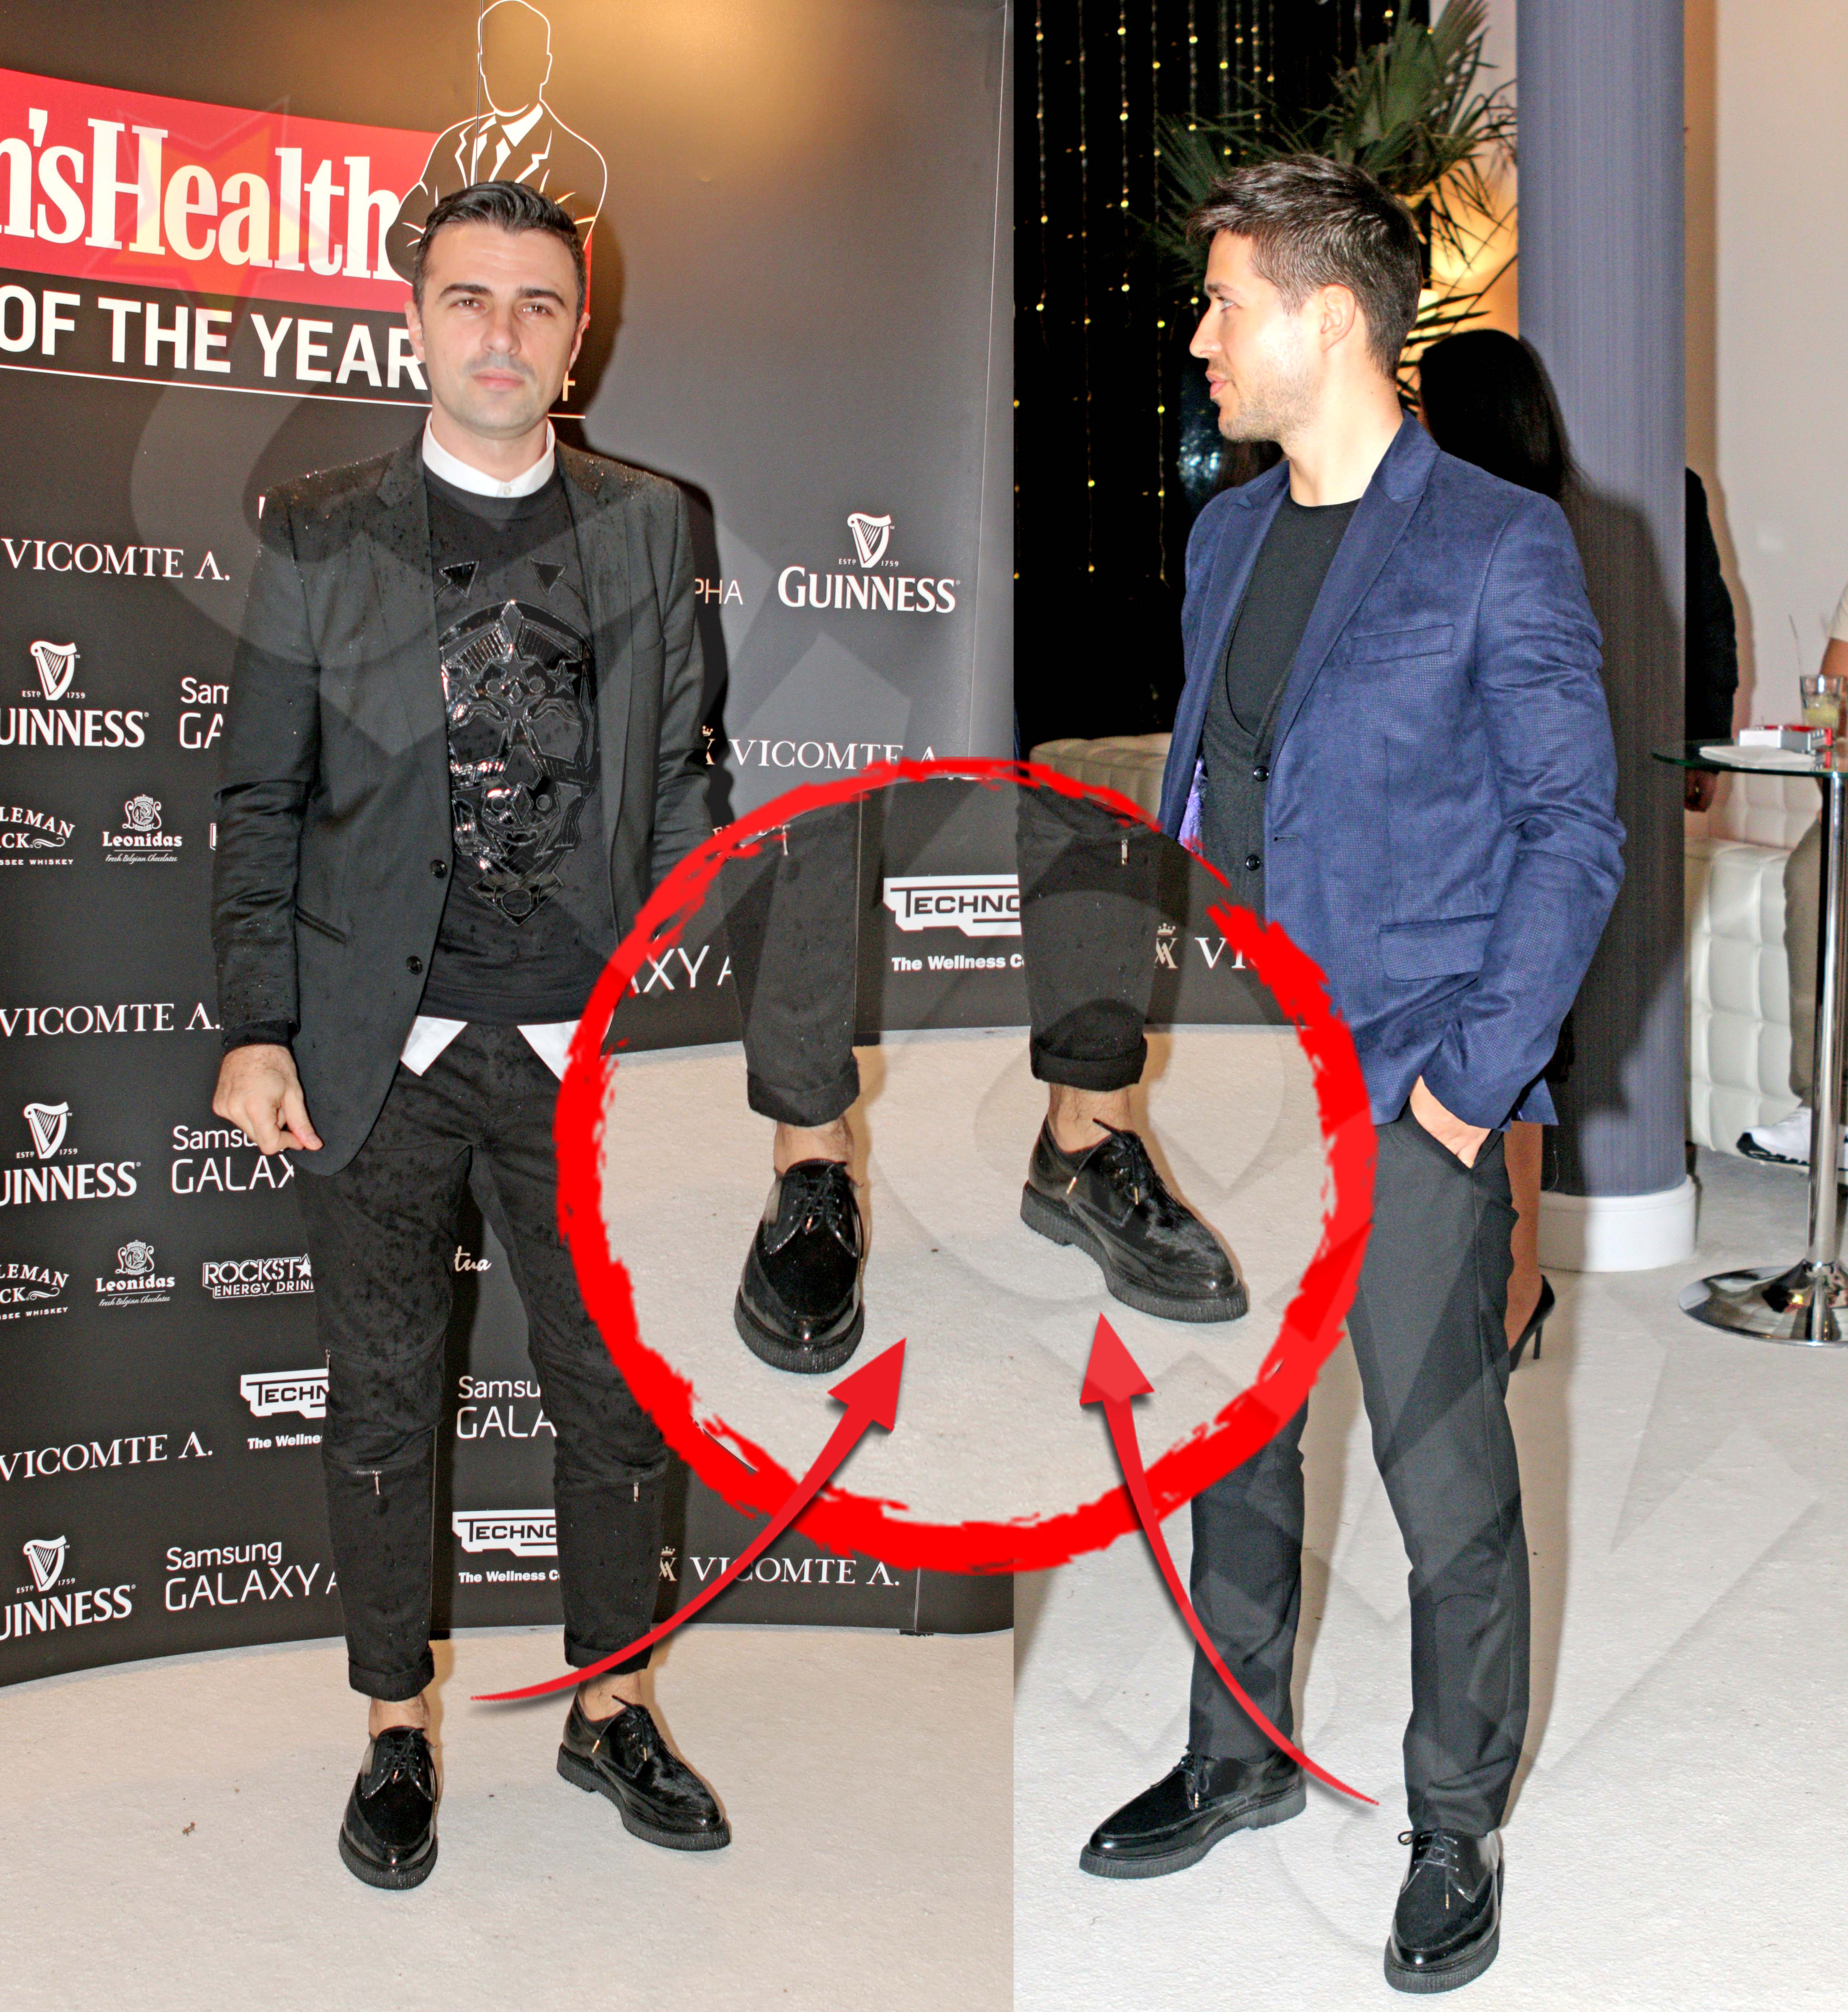 Cei doi au venit la eveniment cu pantofi identici